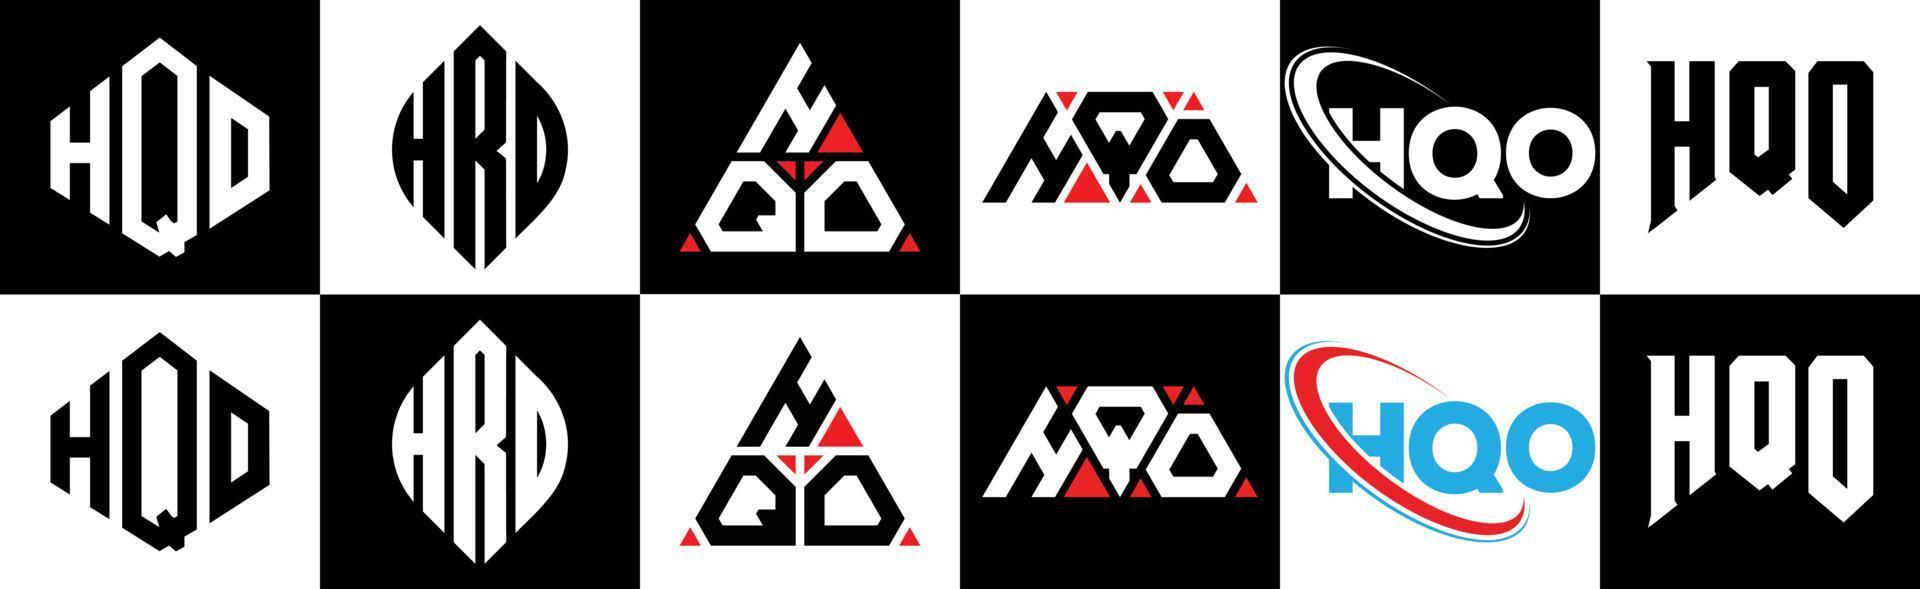 création de logo hqo letter en six styles. hqo polygone, cercle, triangle, hexagone, style plat et simple avec logo de lettre de variation de couleur noir et blanc dans un plan de travail. hqo logo minimaliste et classique vecteur